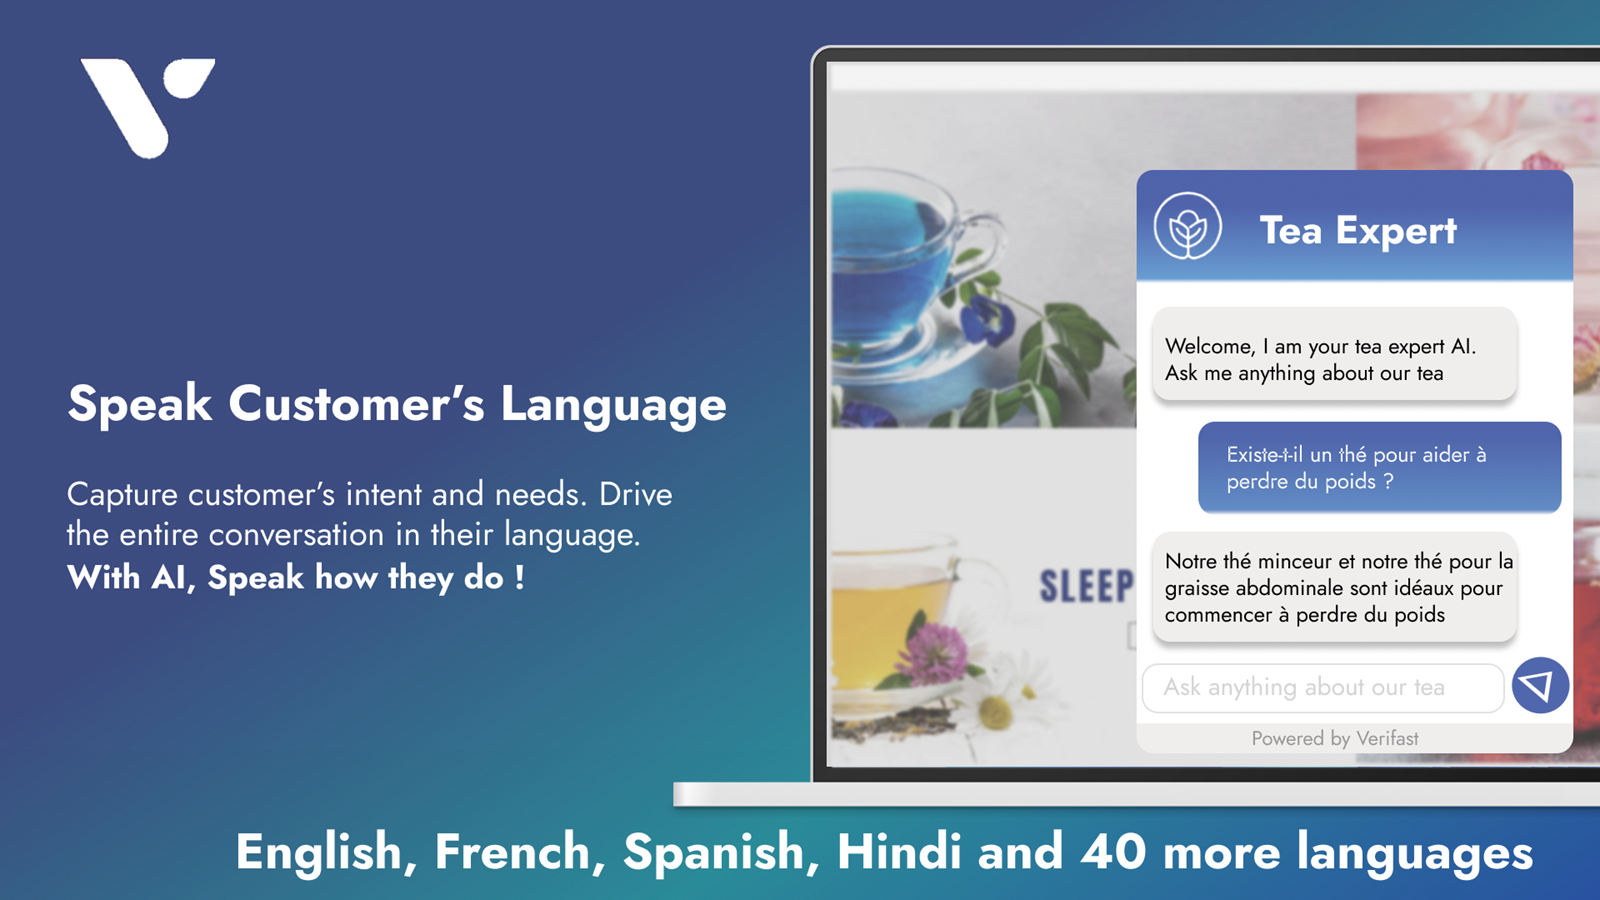 Salgsagent, der kan tale med kunden på mere end 40 sprog